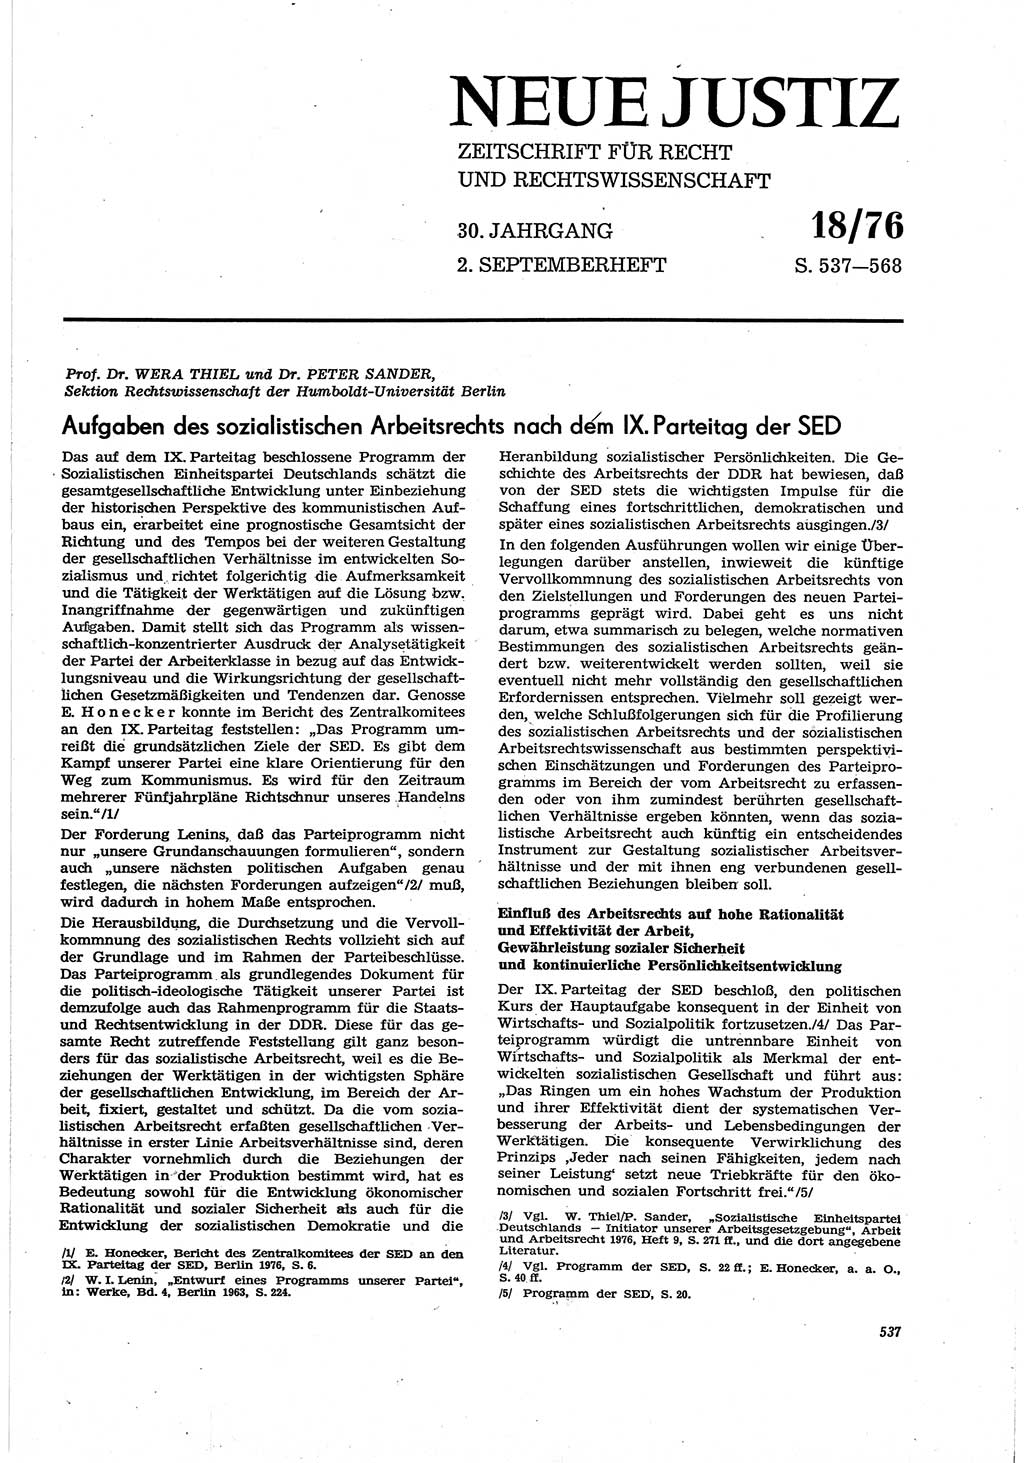 Neue Justiz (NJ), Zeitschrift für Recht und Rechtswissenschaft [Deutsche Demokratische Republik (DDR)], 30. Jahrgang 1976, Seite 537 (NJ DDR 1976, S. 537)